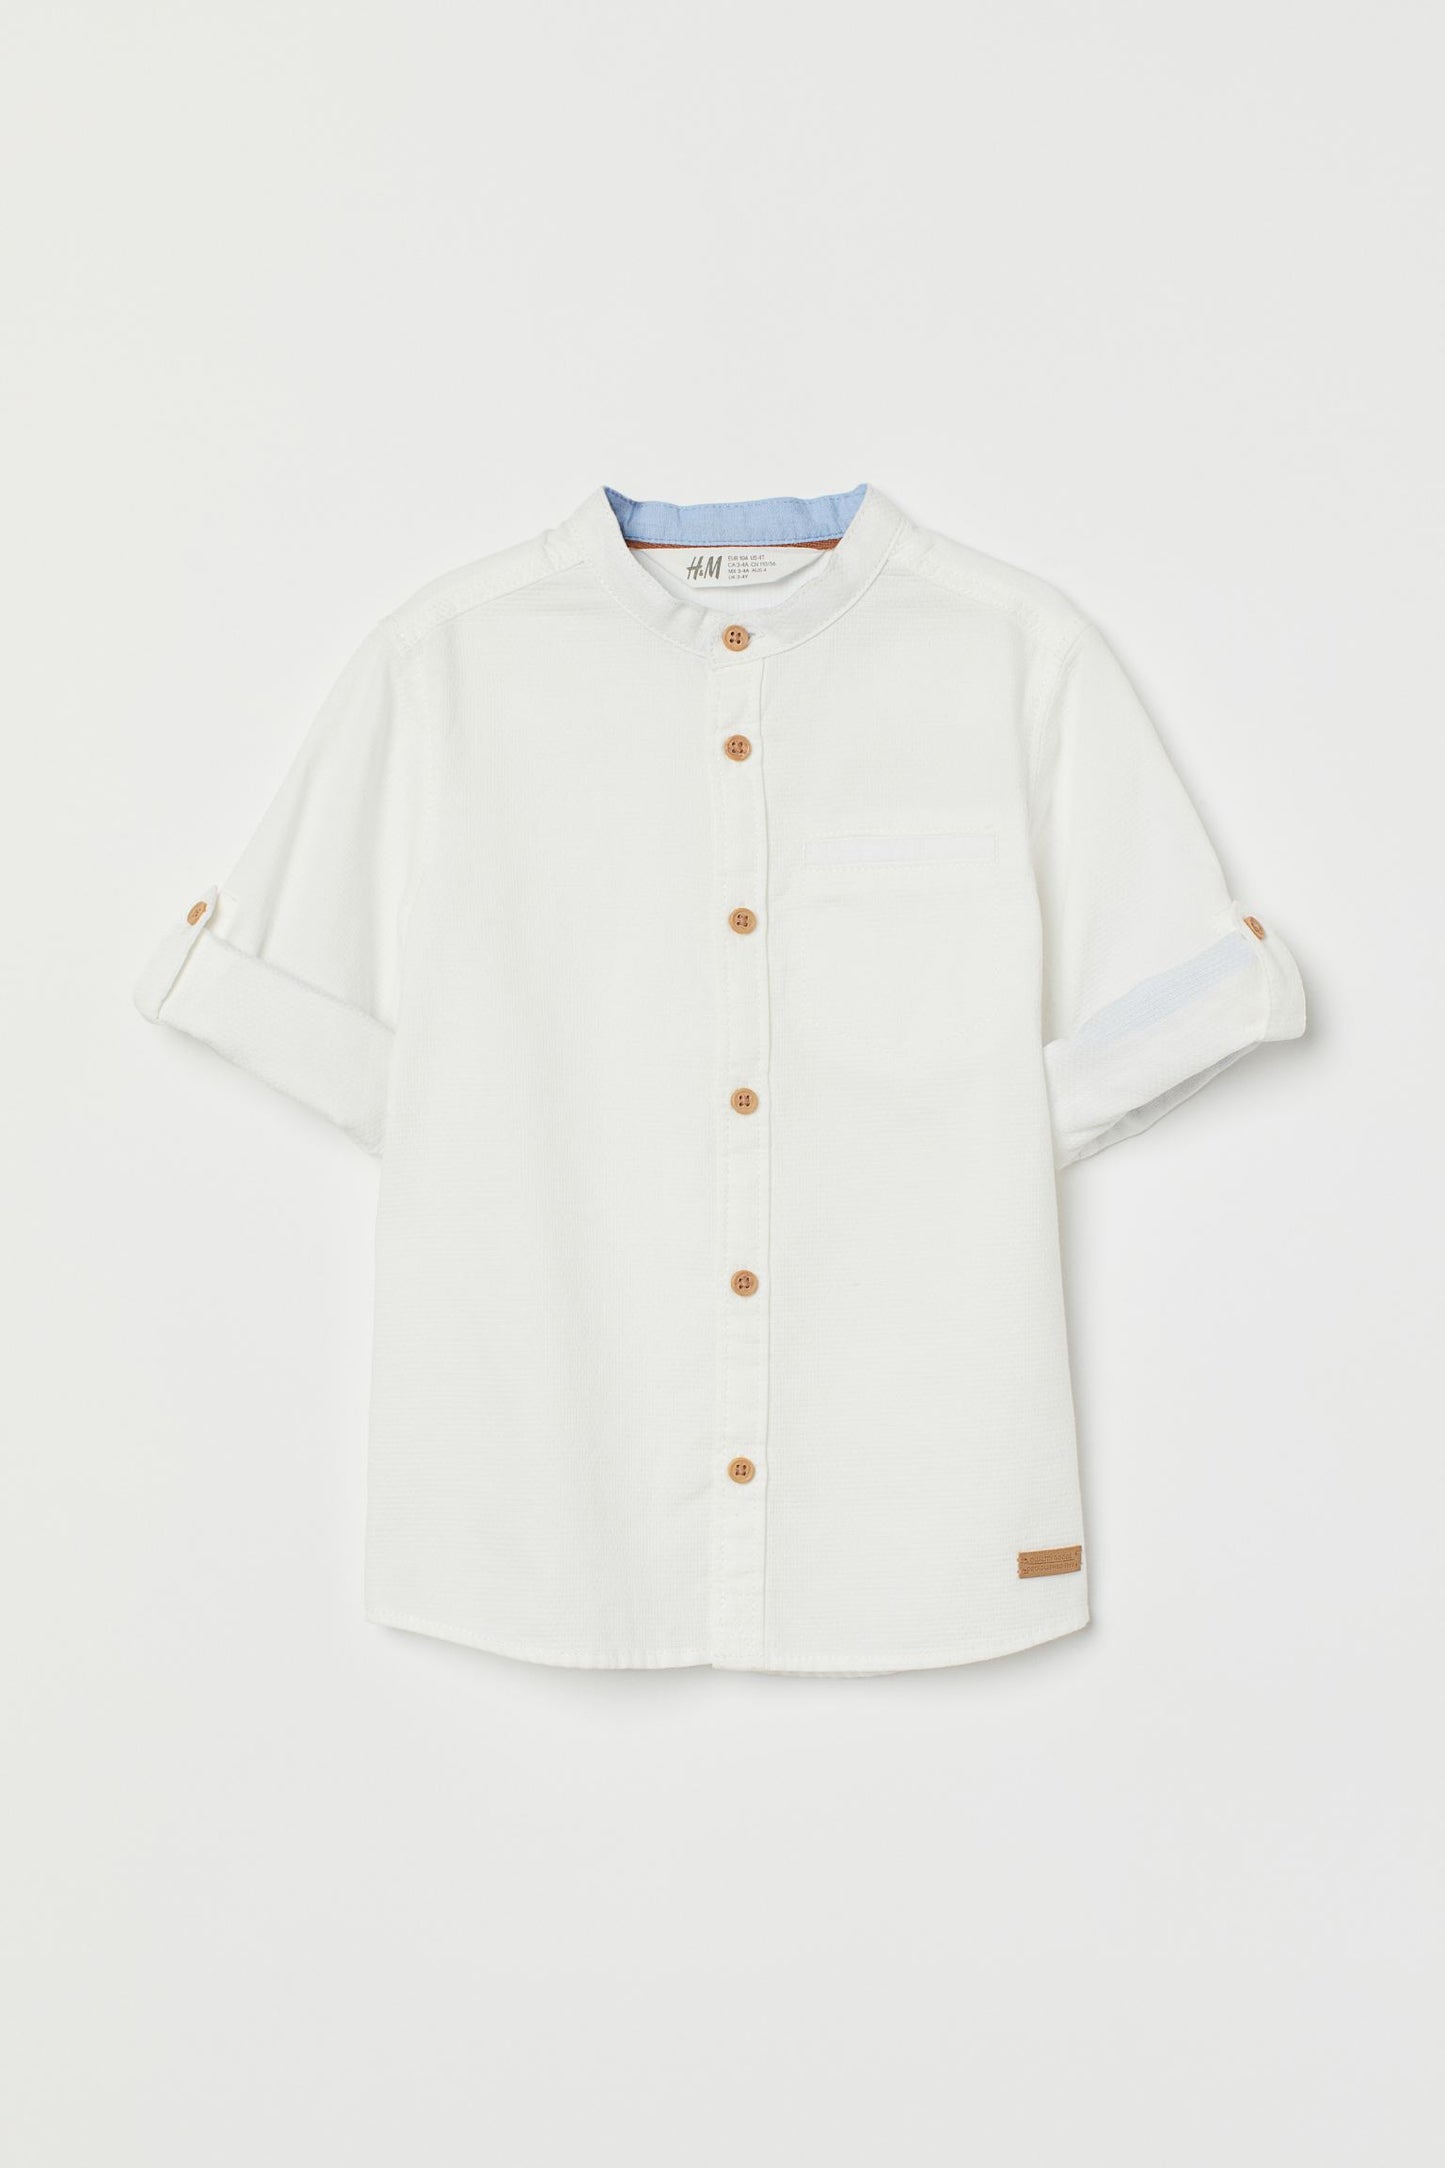 Camisa blanca henley niño botones det – Kima Shop